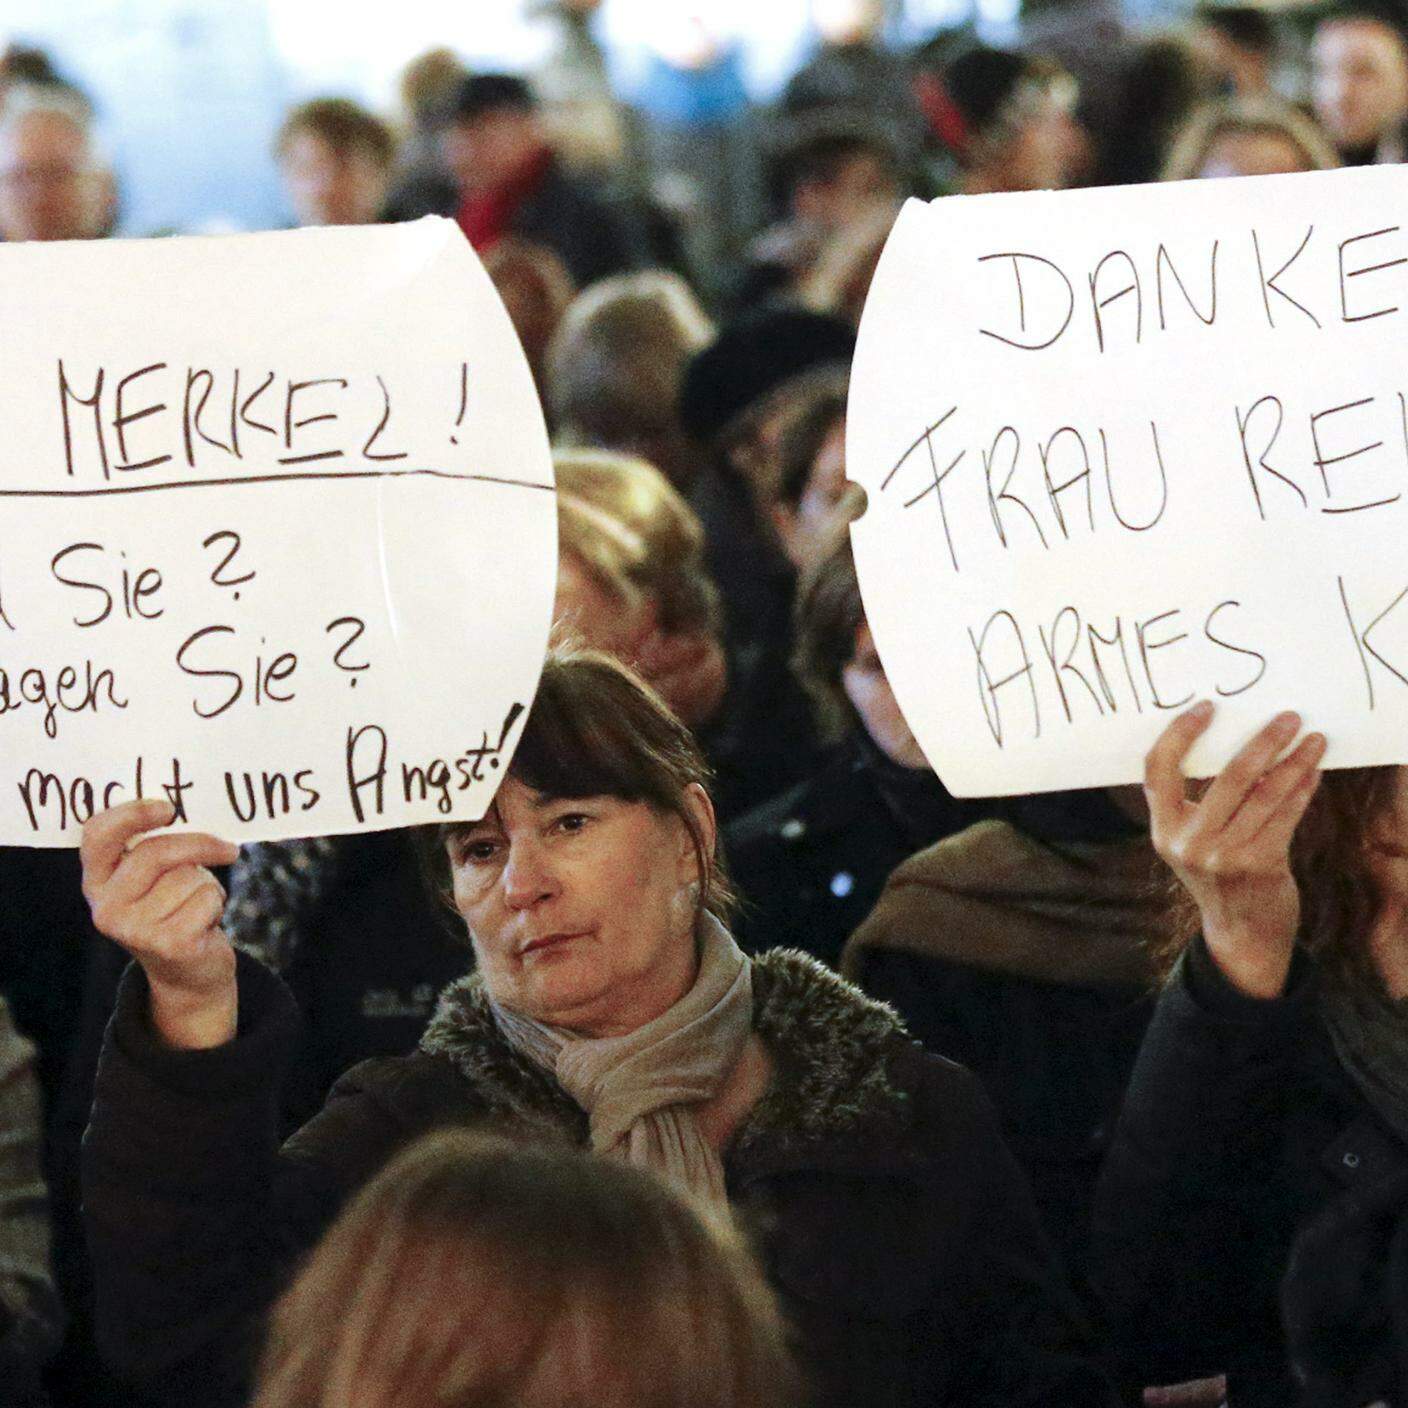 Angela Merkel e Henriette Reker, obiettivi della rabbia femminile a Colonia